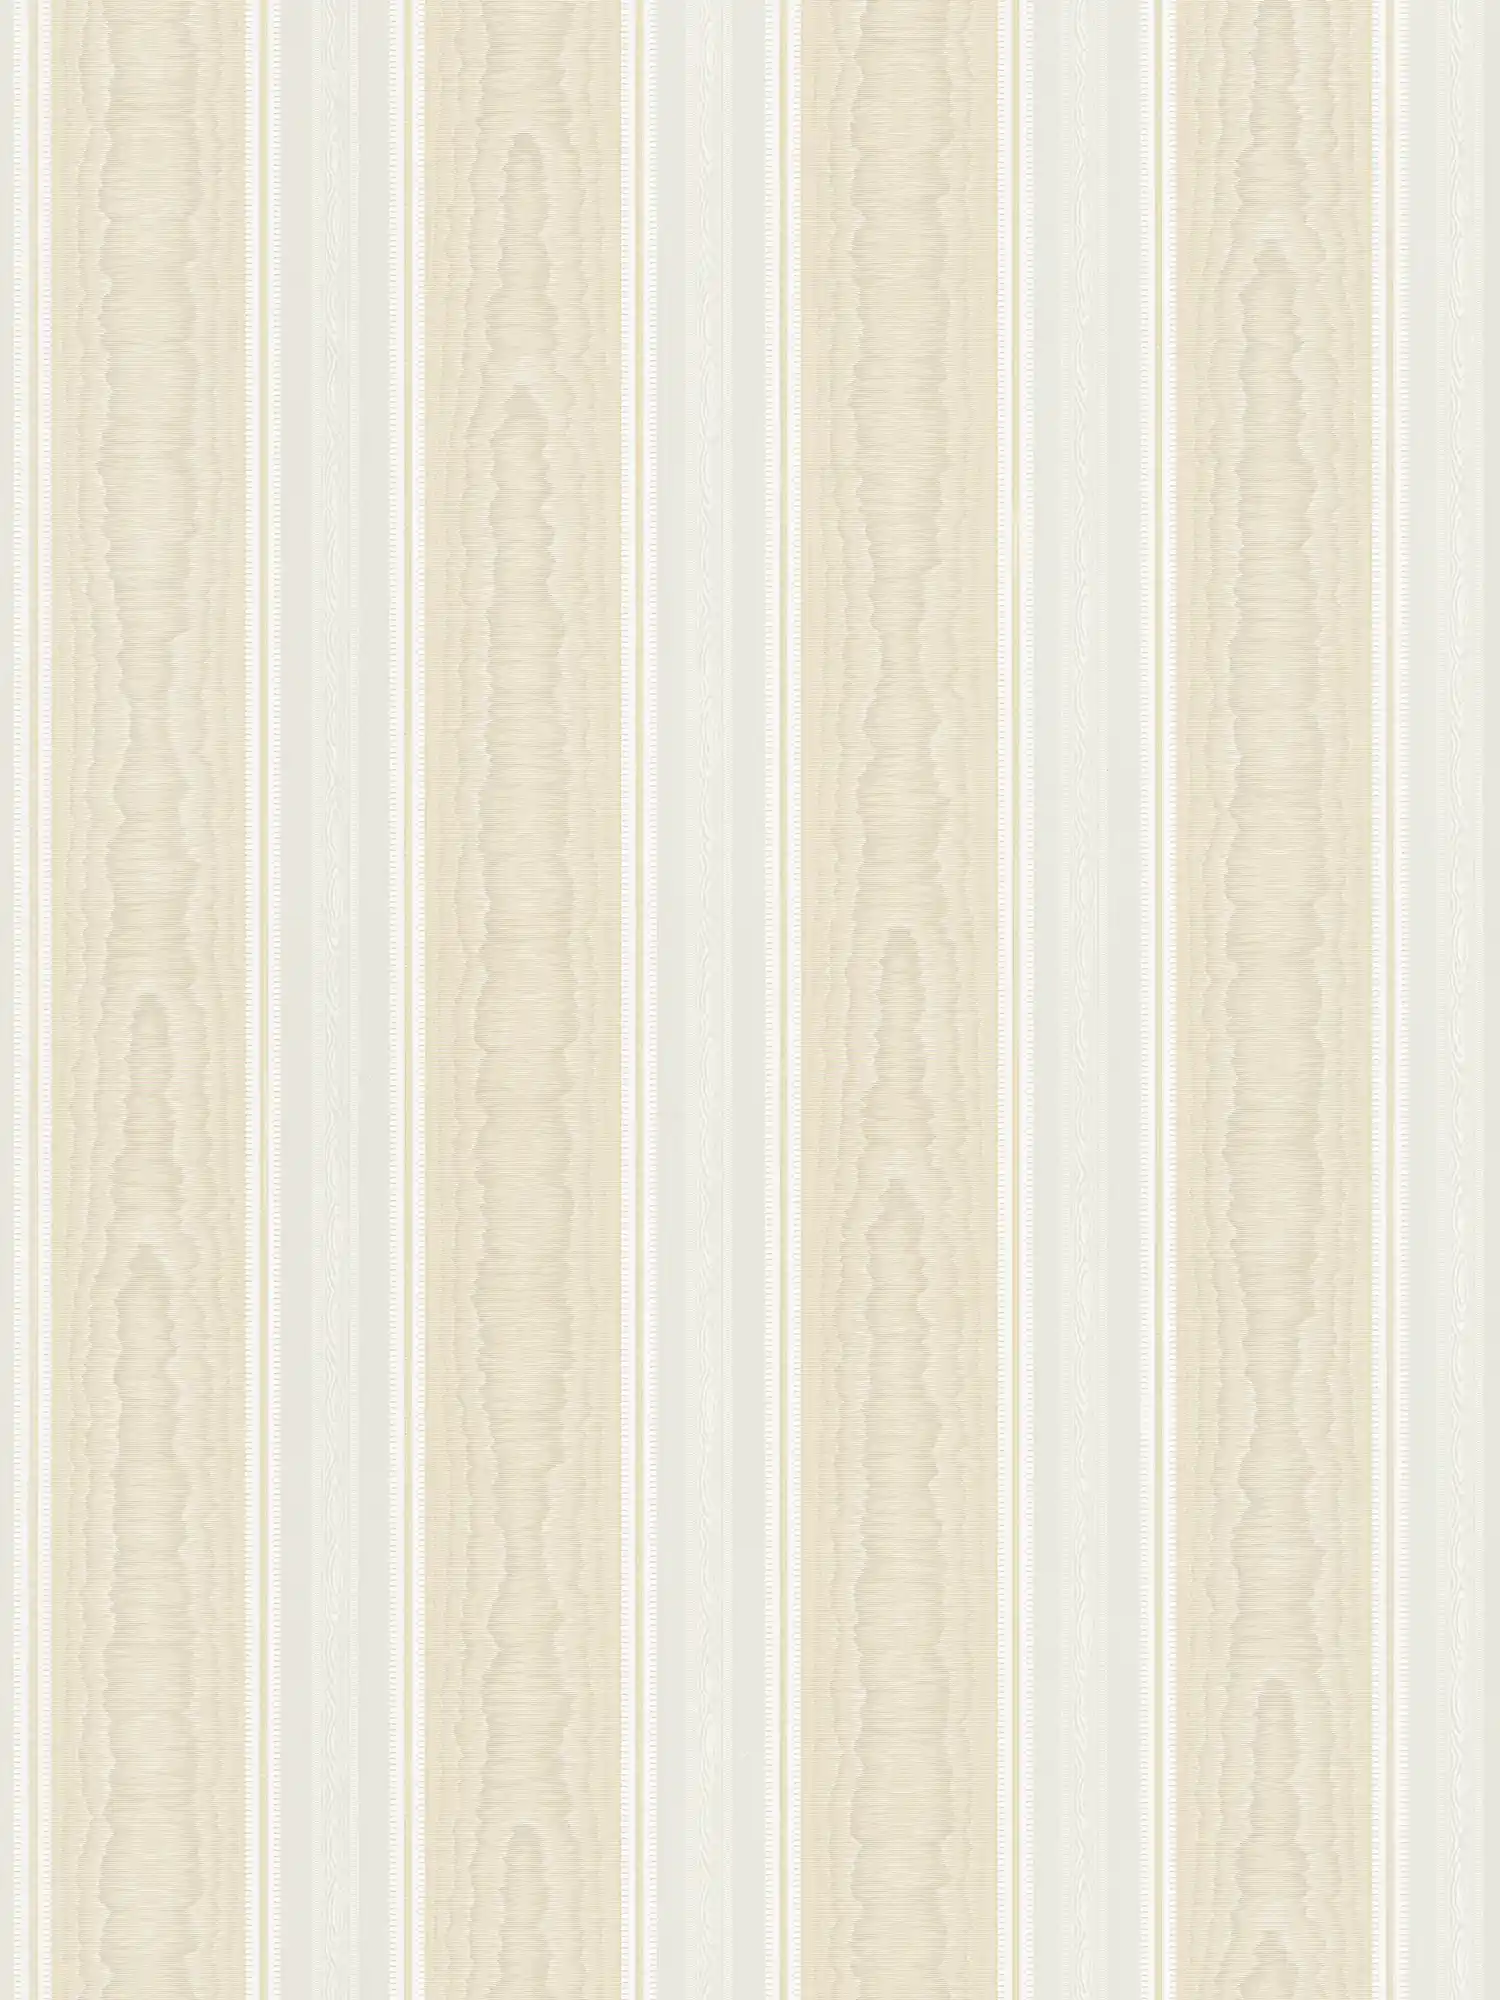 Gestreept behang met zijde moiré effect - beige, wit
